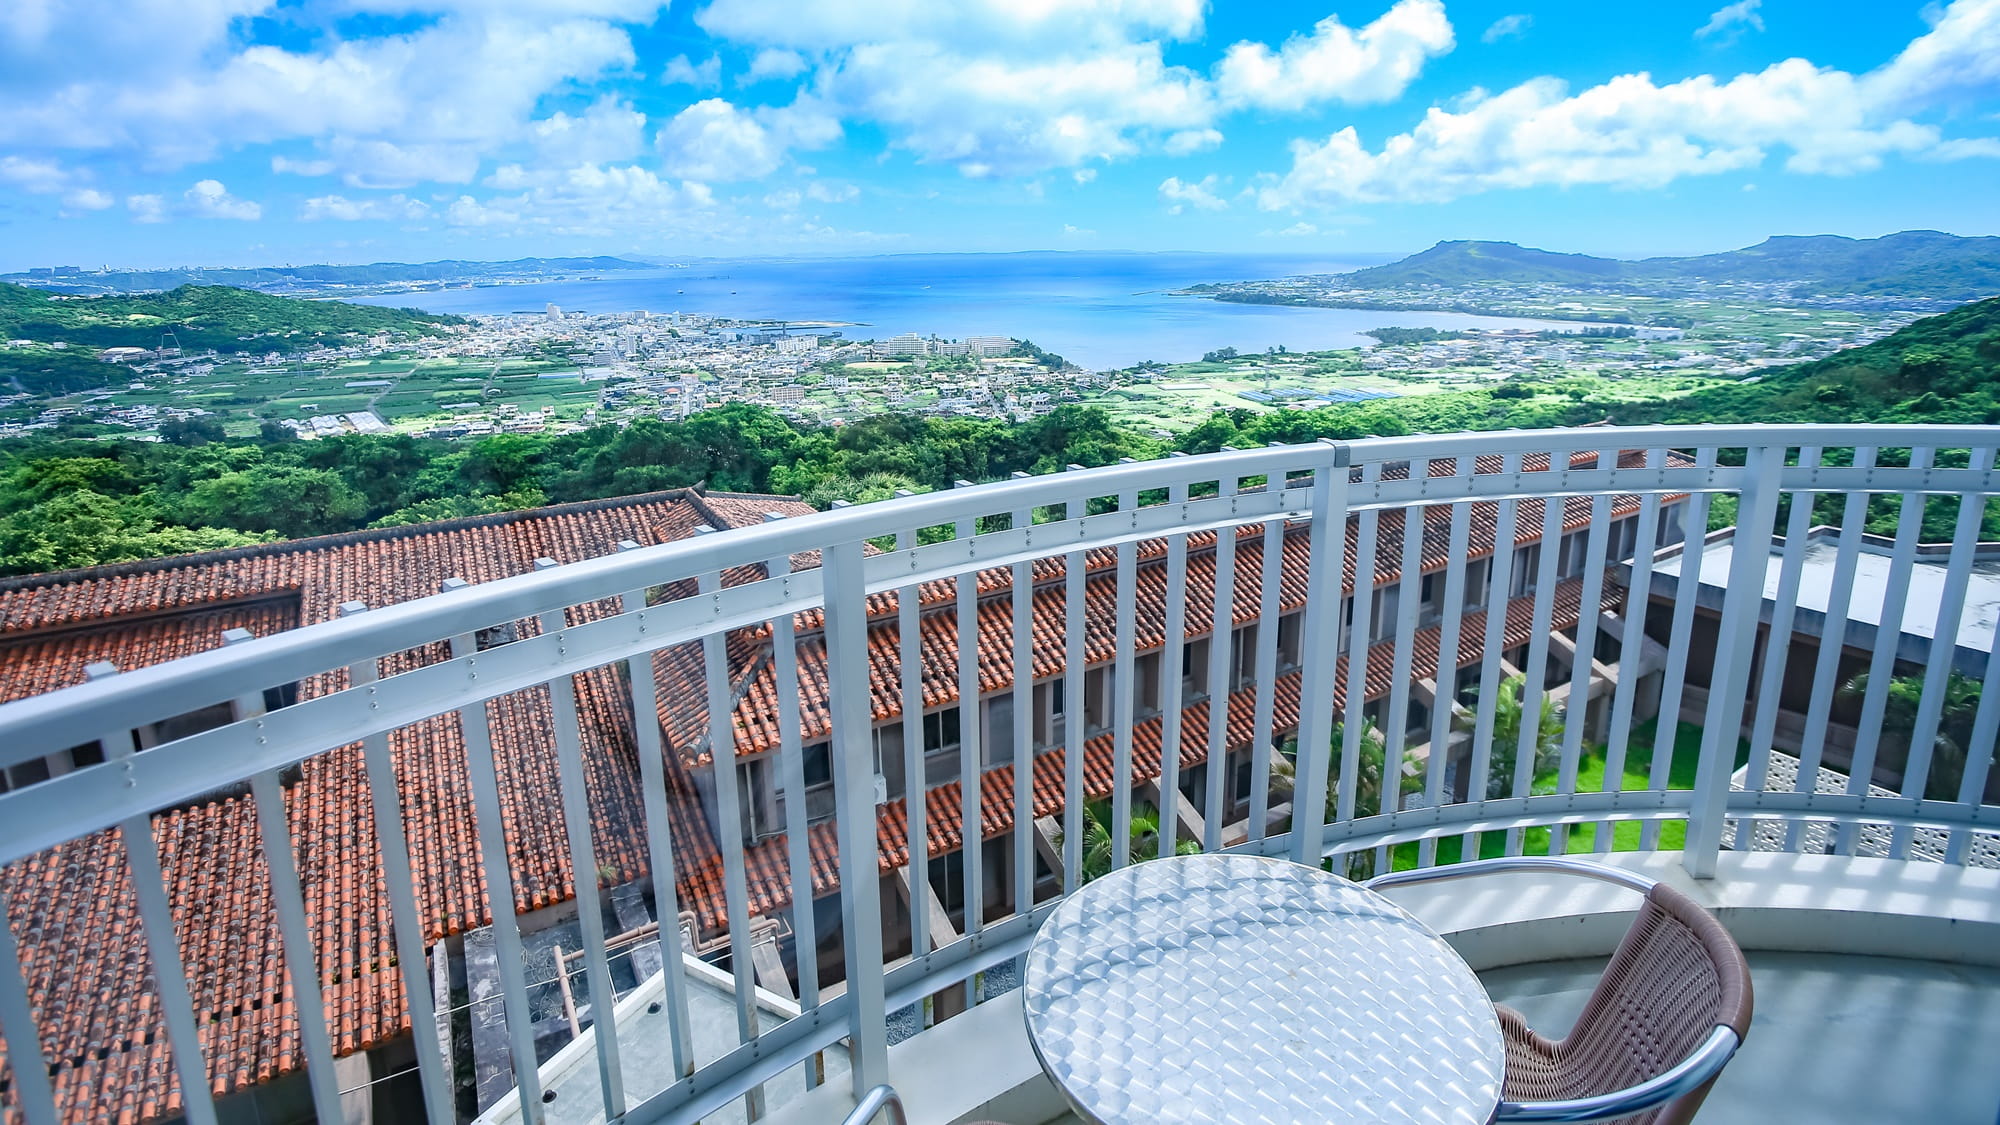 佐敷の丘から見渡す景色は沖縄をより近くに感じることができます